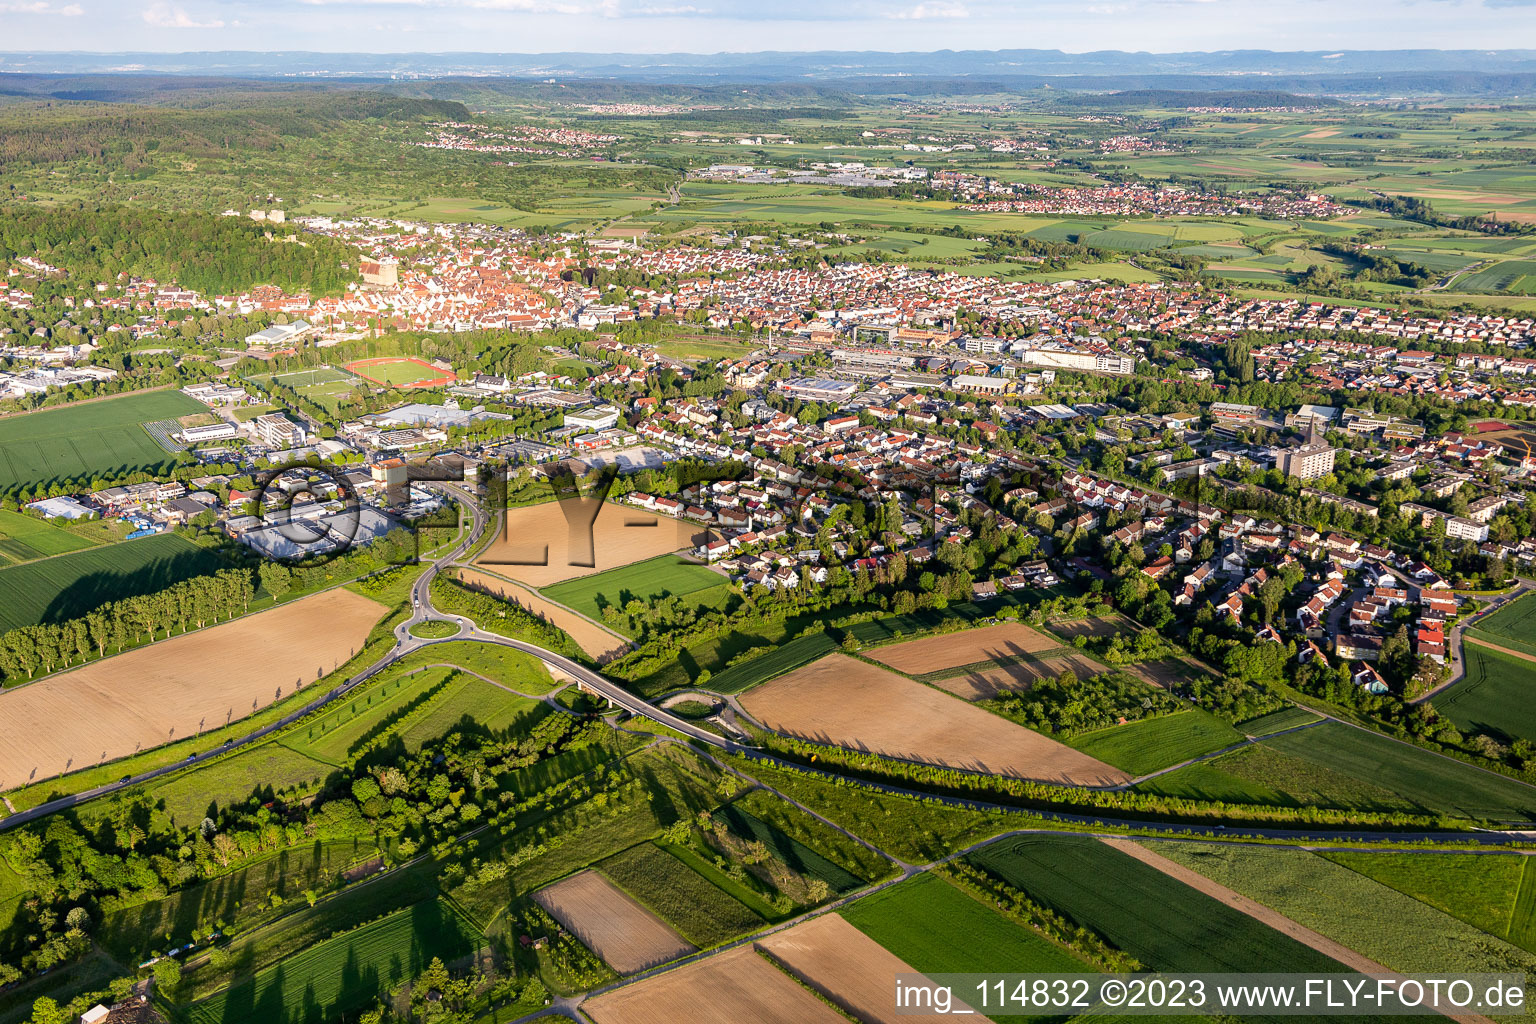 Vue aérienne de Paysage urbain global à Herrenberg dans le département Bade-Wurtemberg, Allemagne